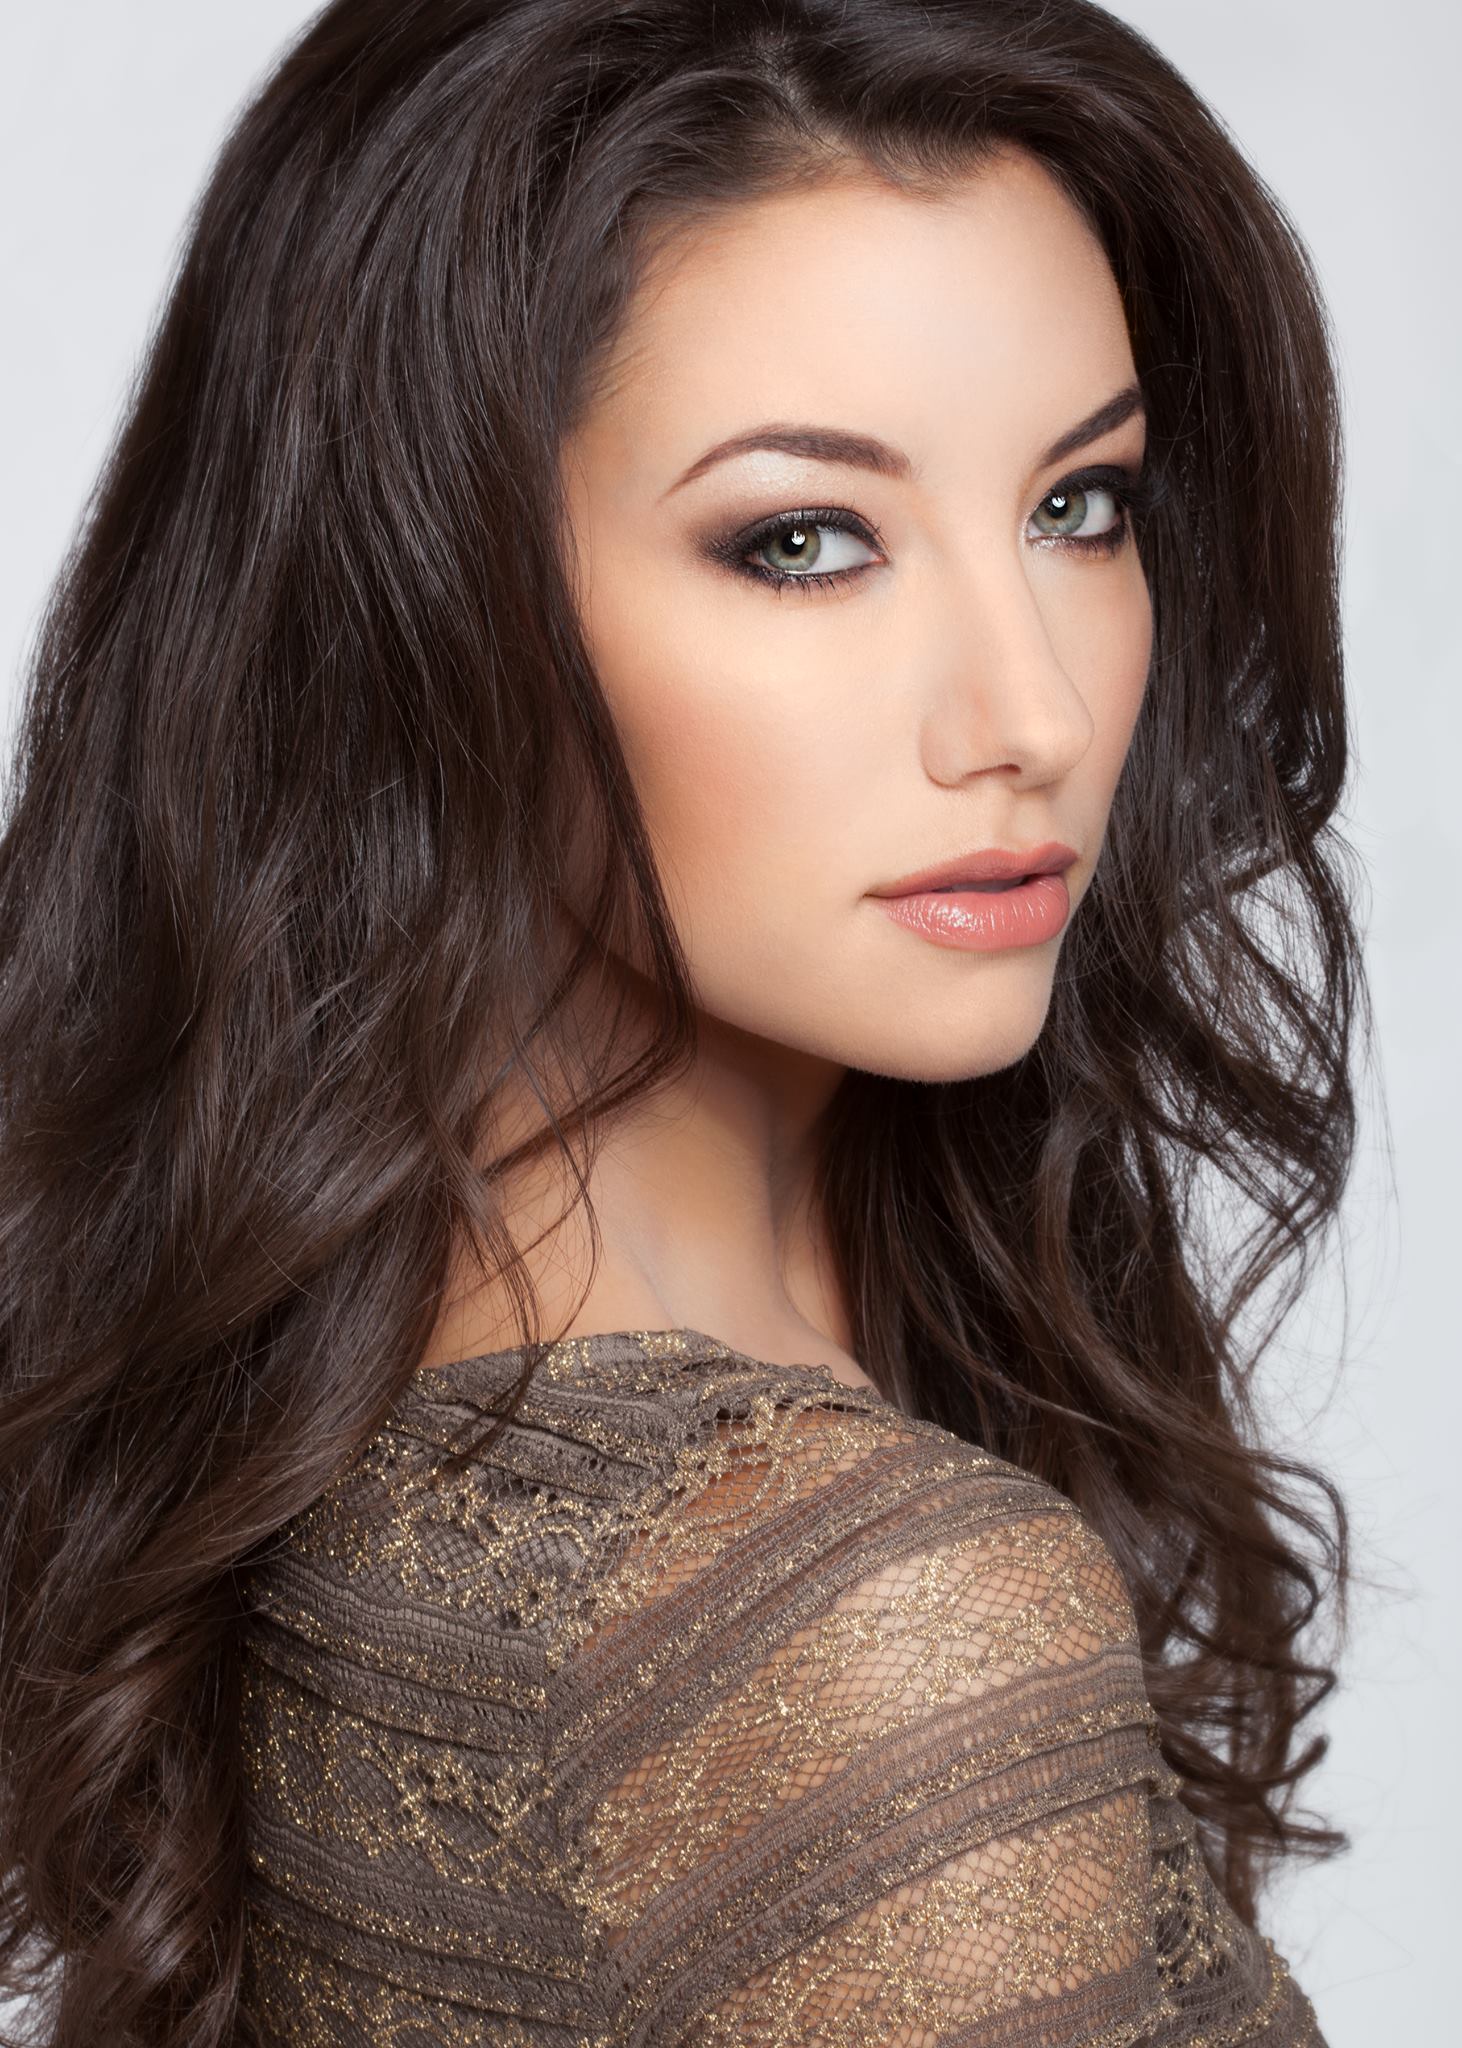 Candace Kendall Filipino Dutch American Model Wins Miss